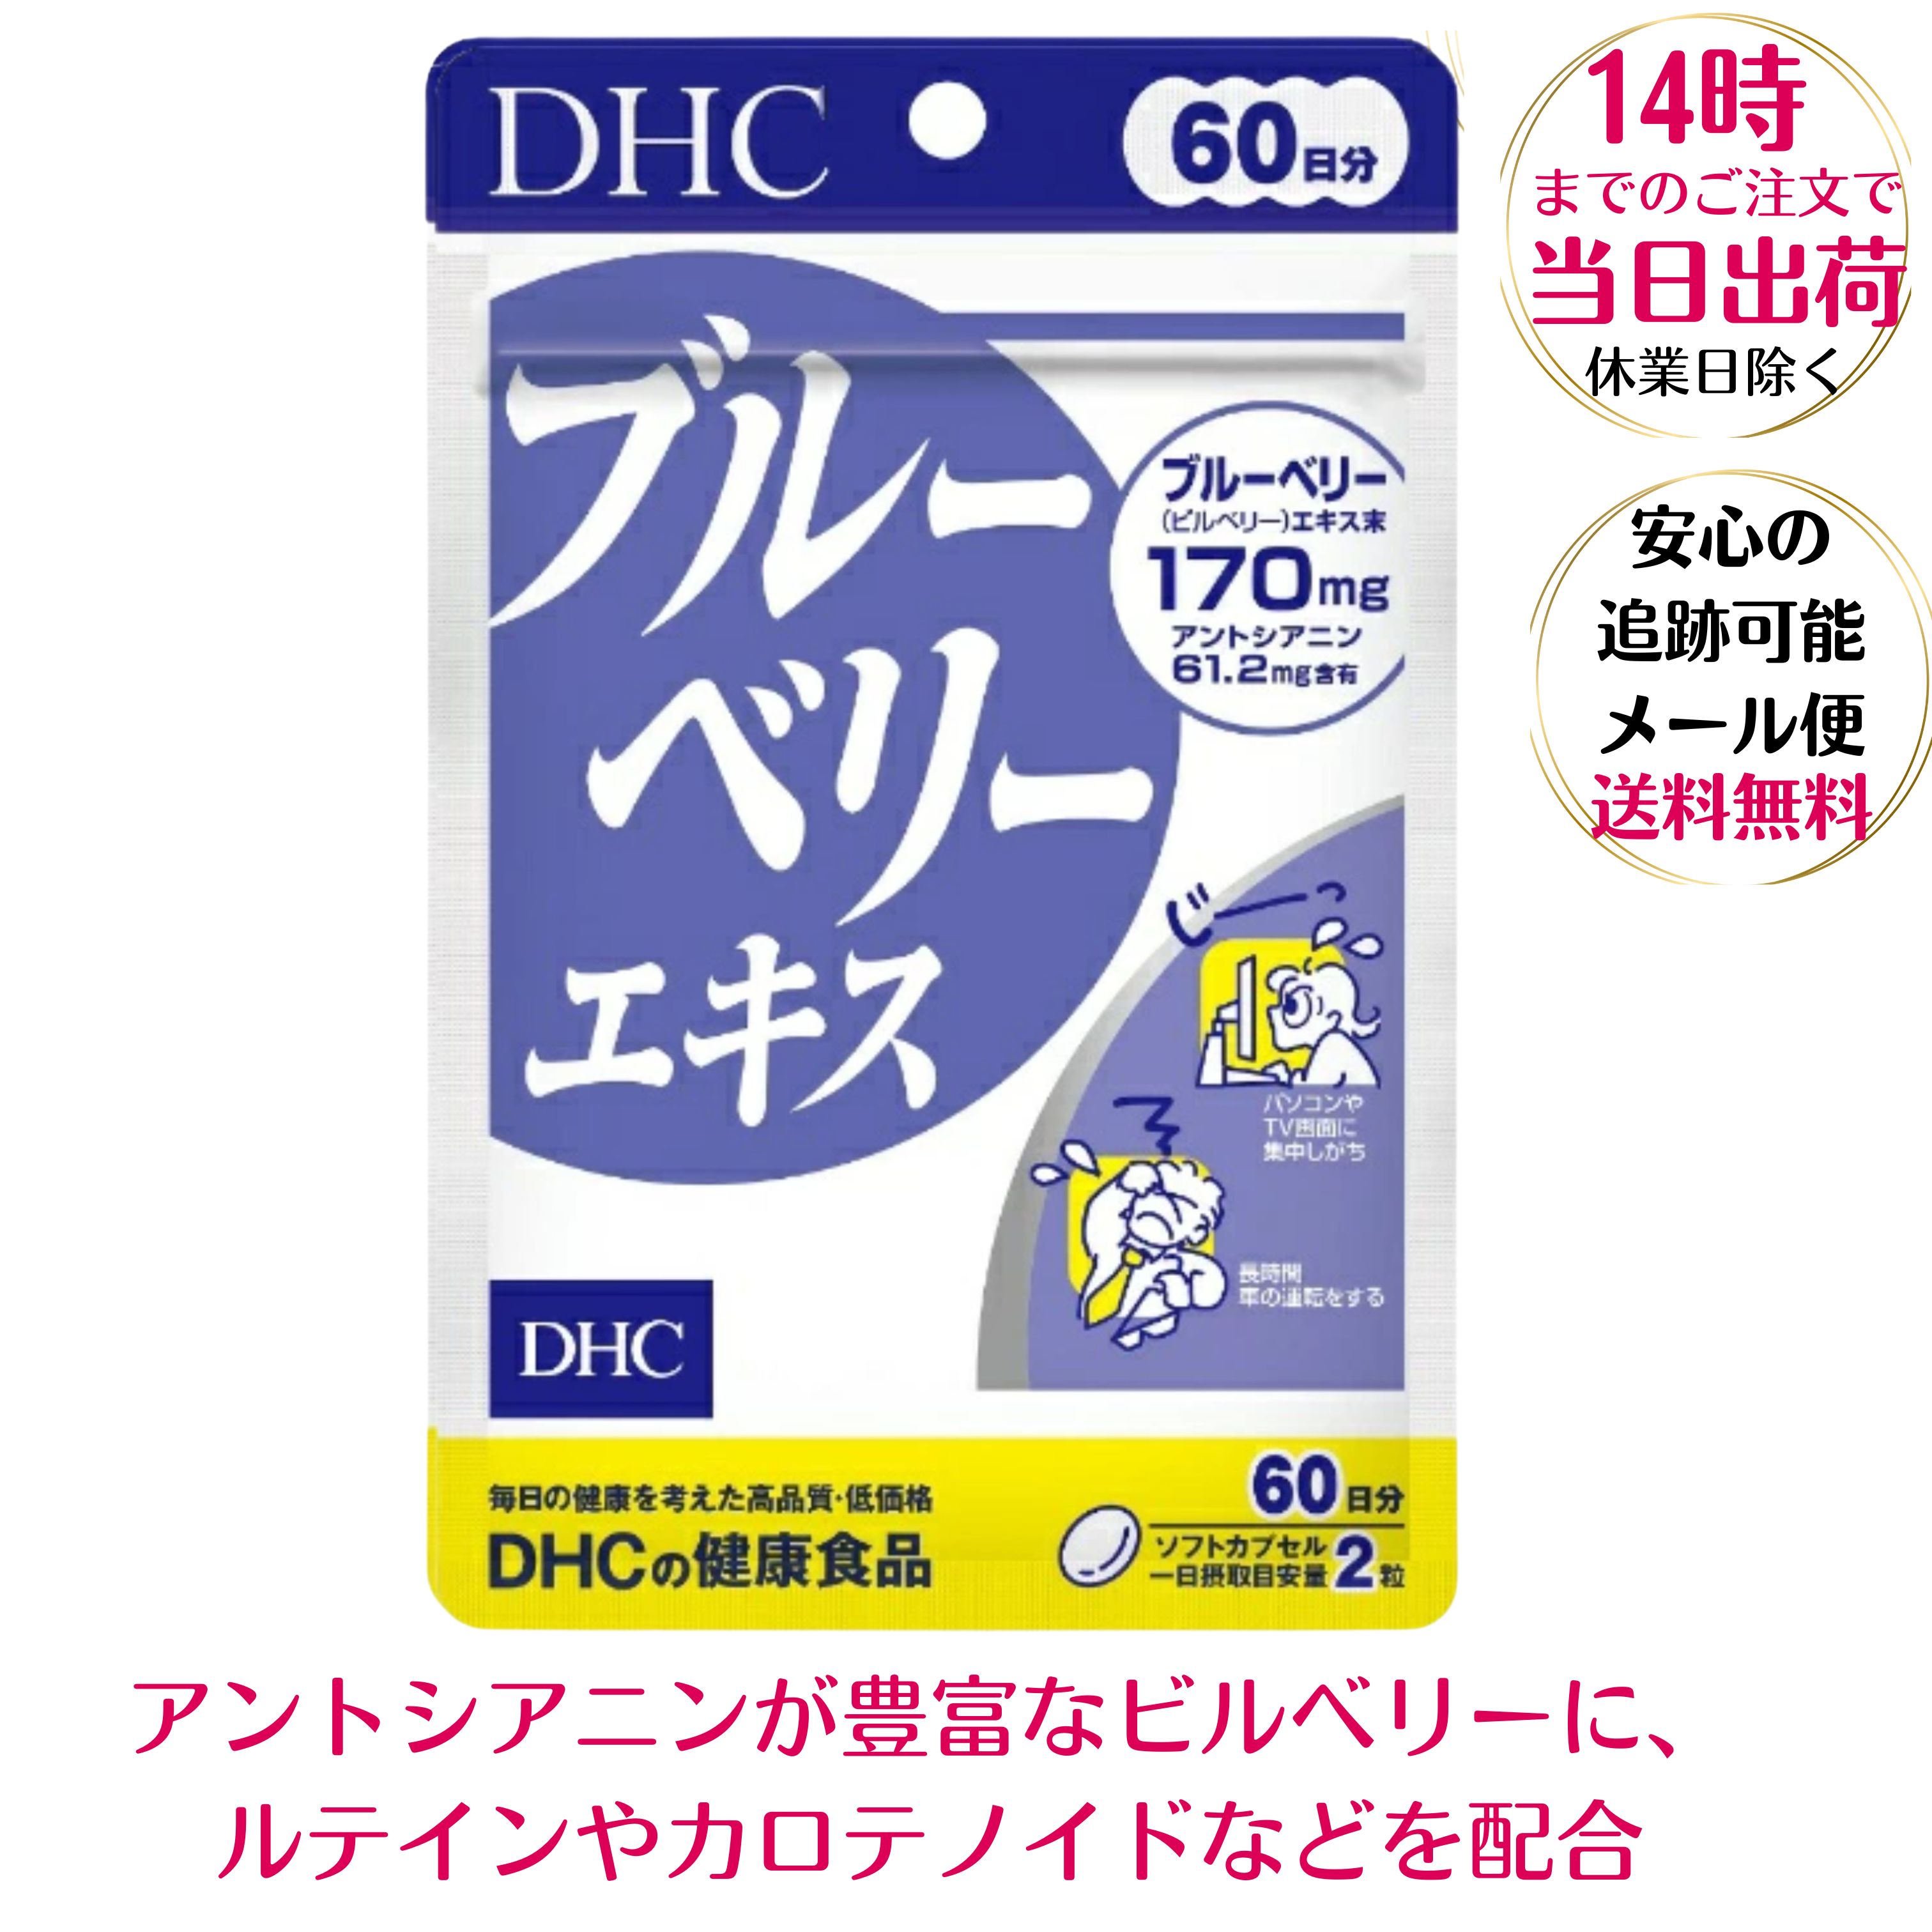 DHC ブルーベリーエキス 60日分(120粒入)DHC サプリメト